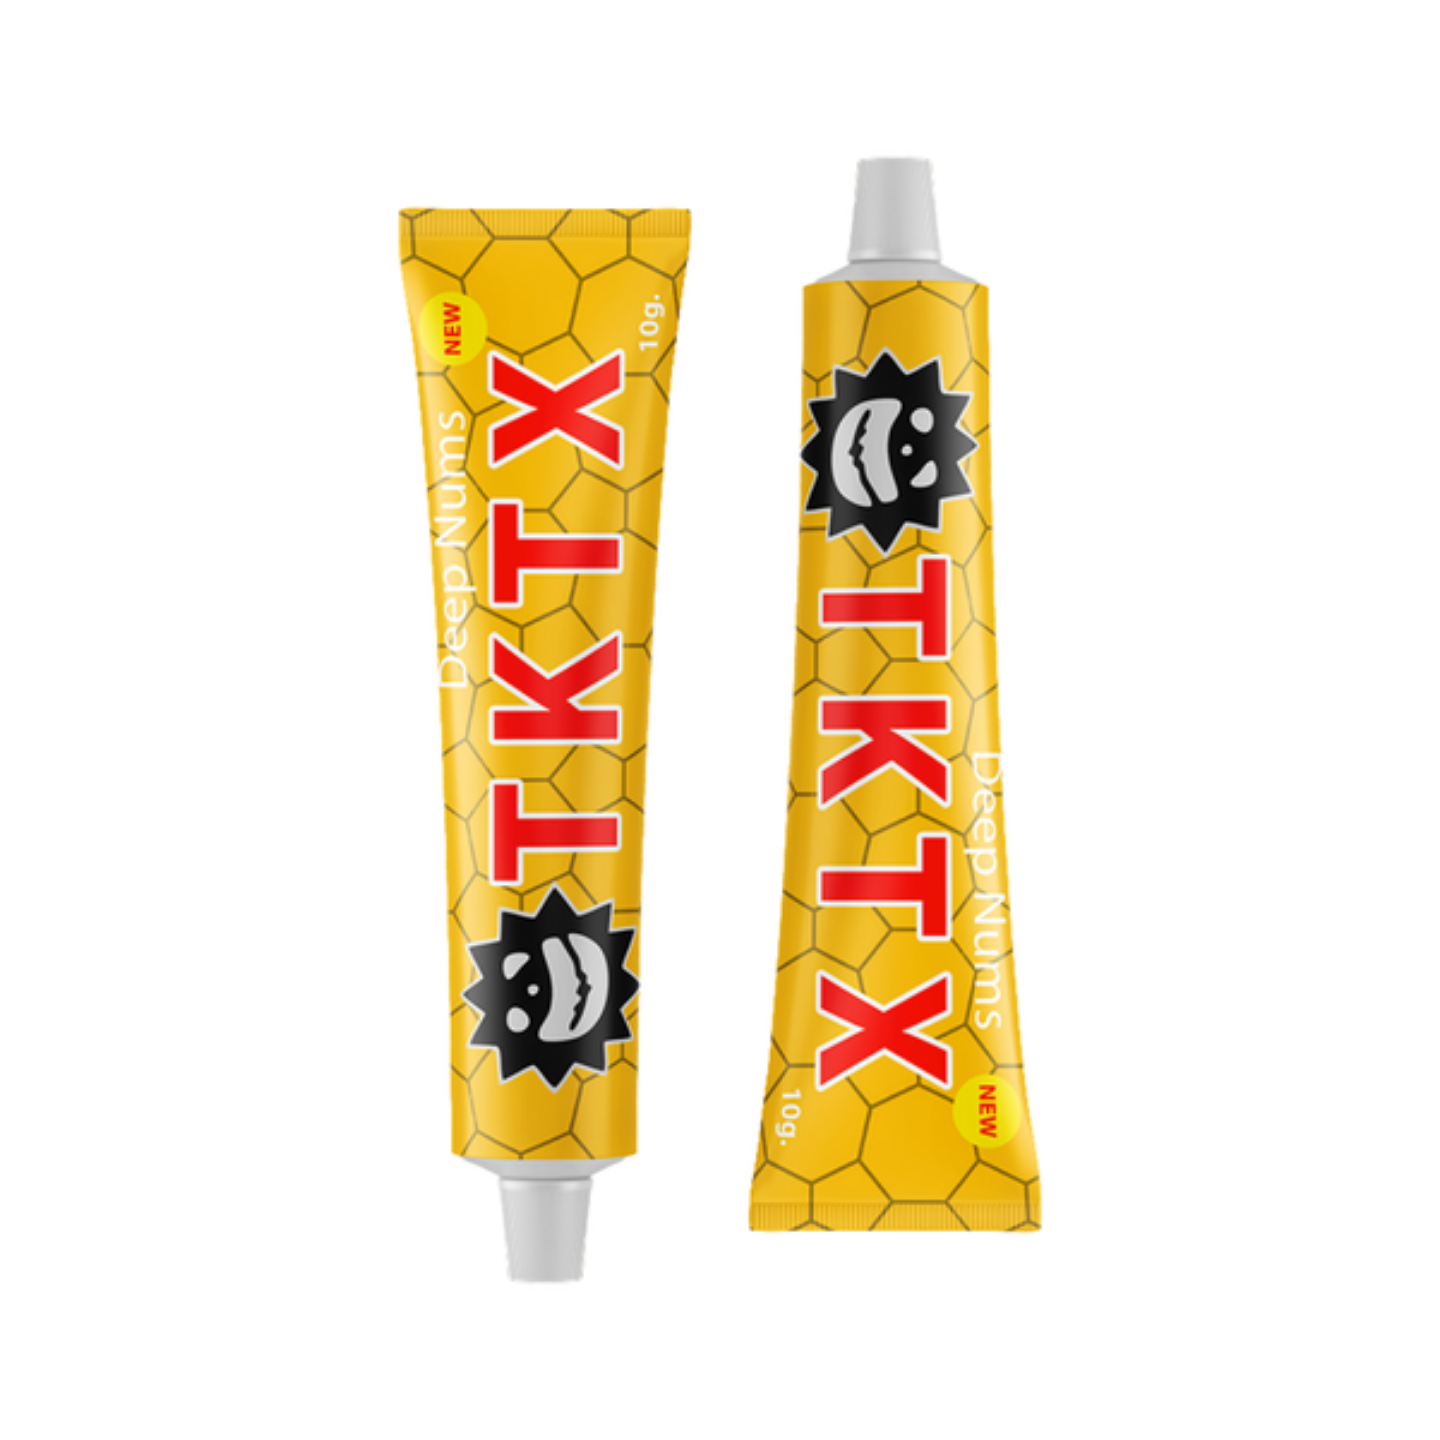 TKTX verdovingszalf crème Geel 75% Sale